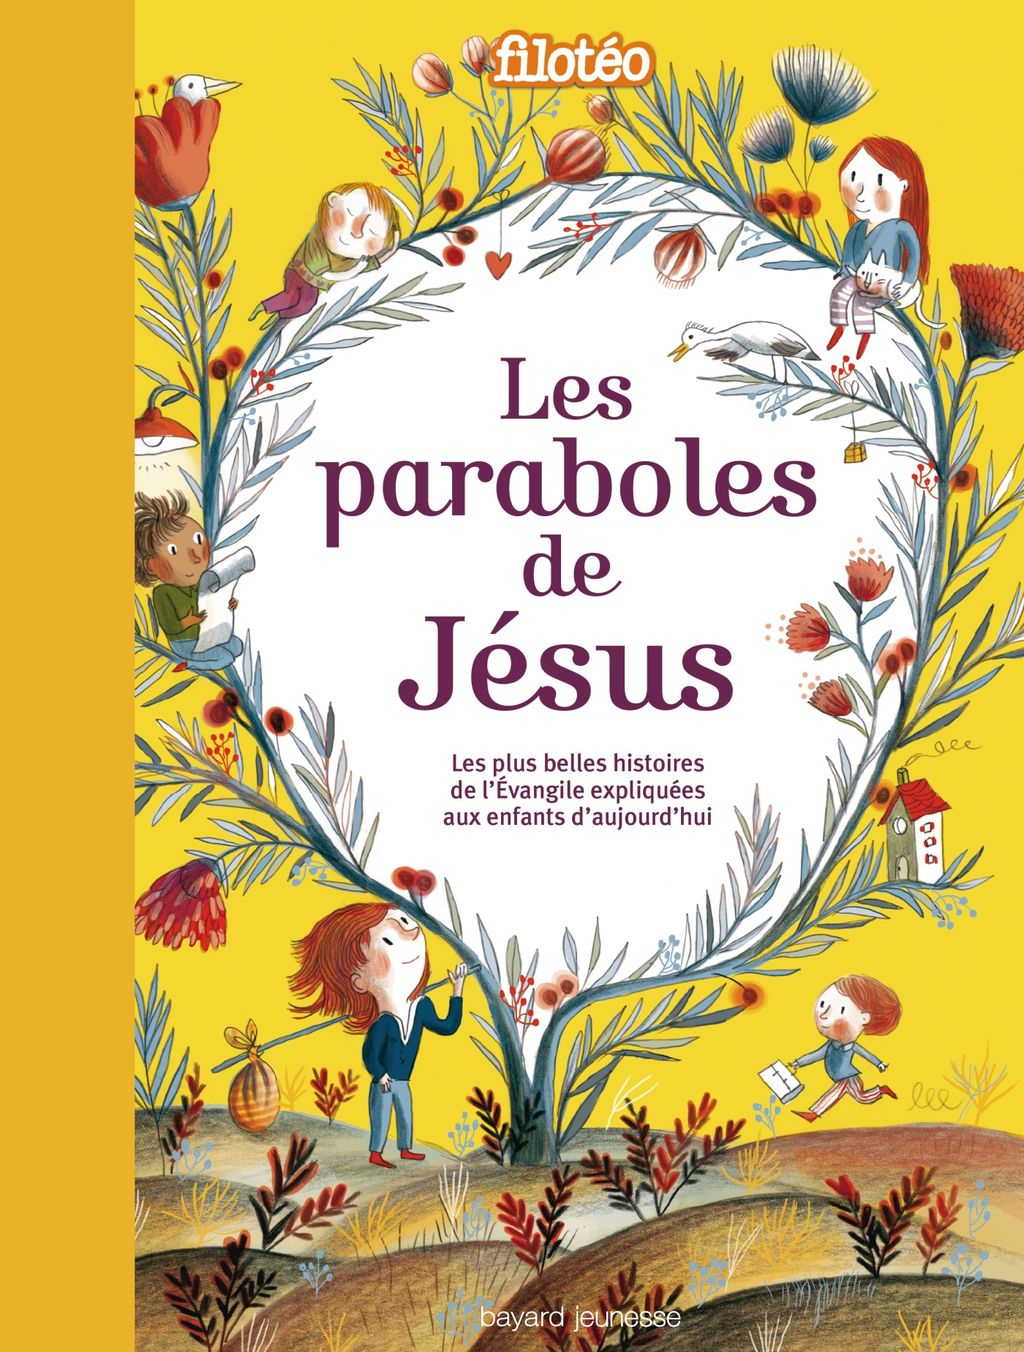 « Les paraboles de Jésus » cover